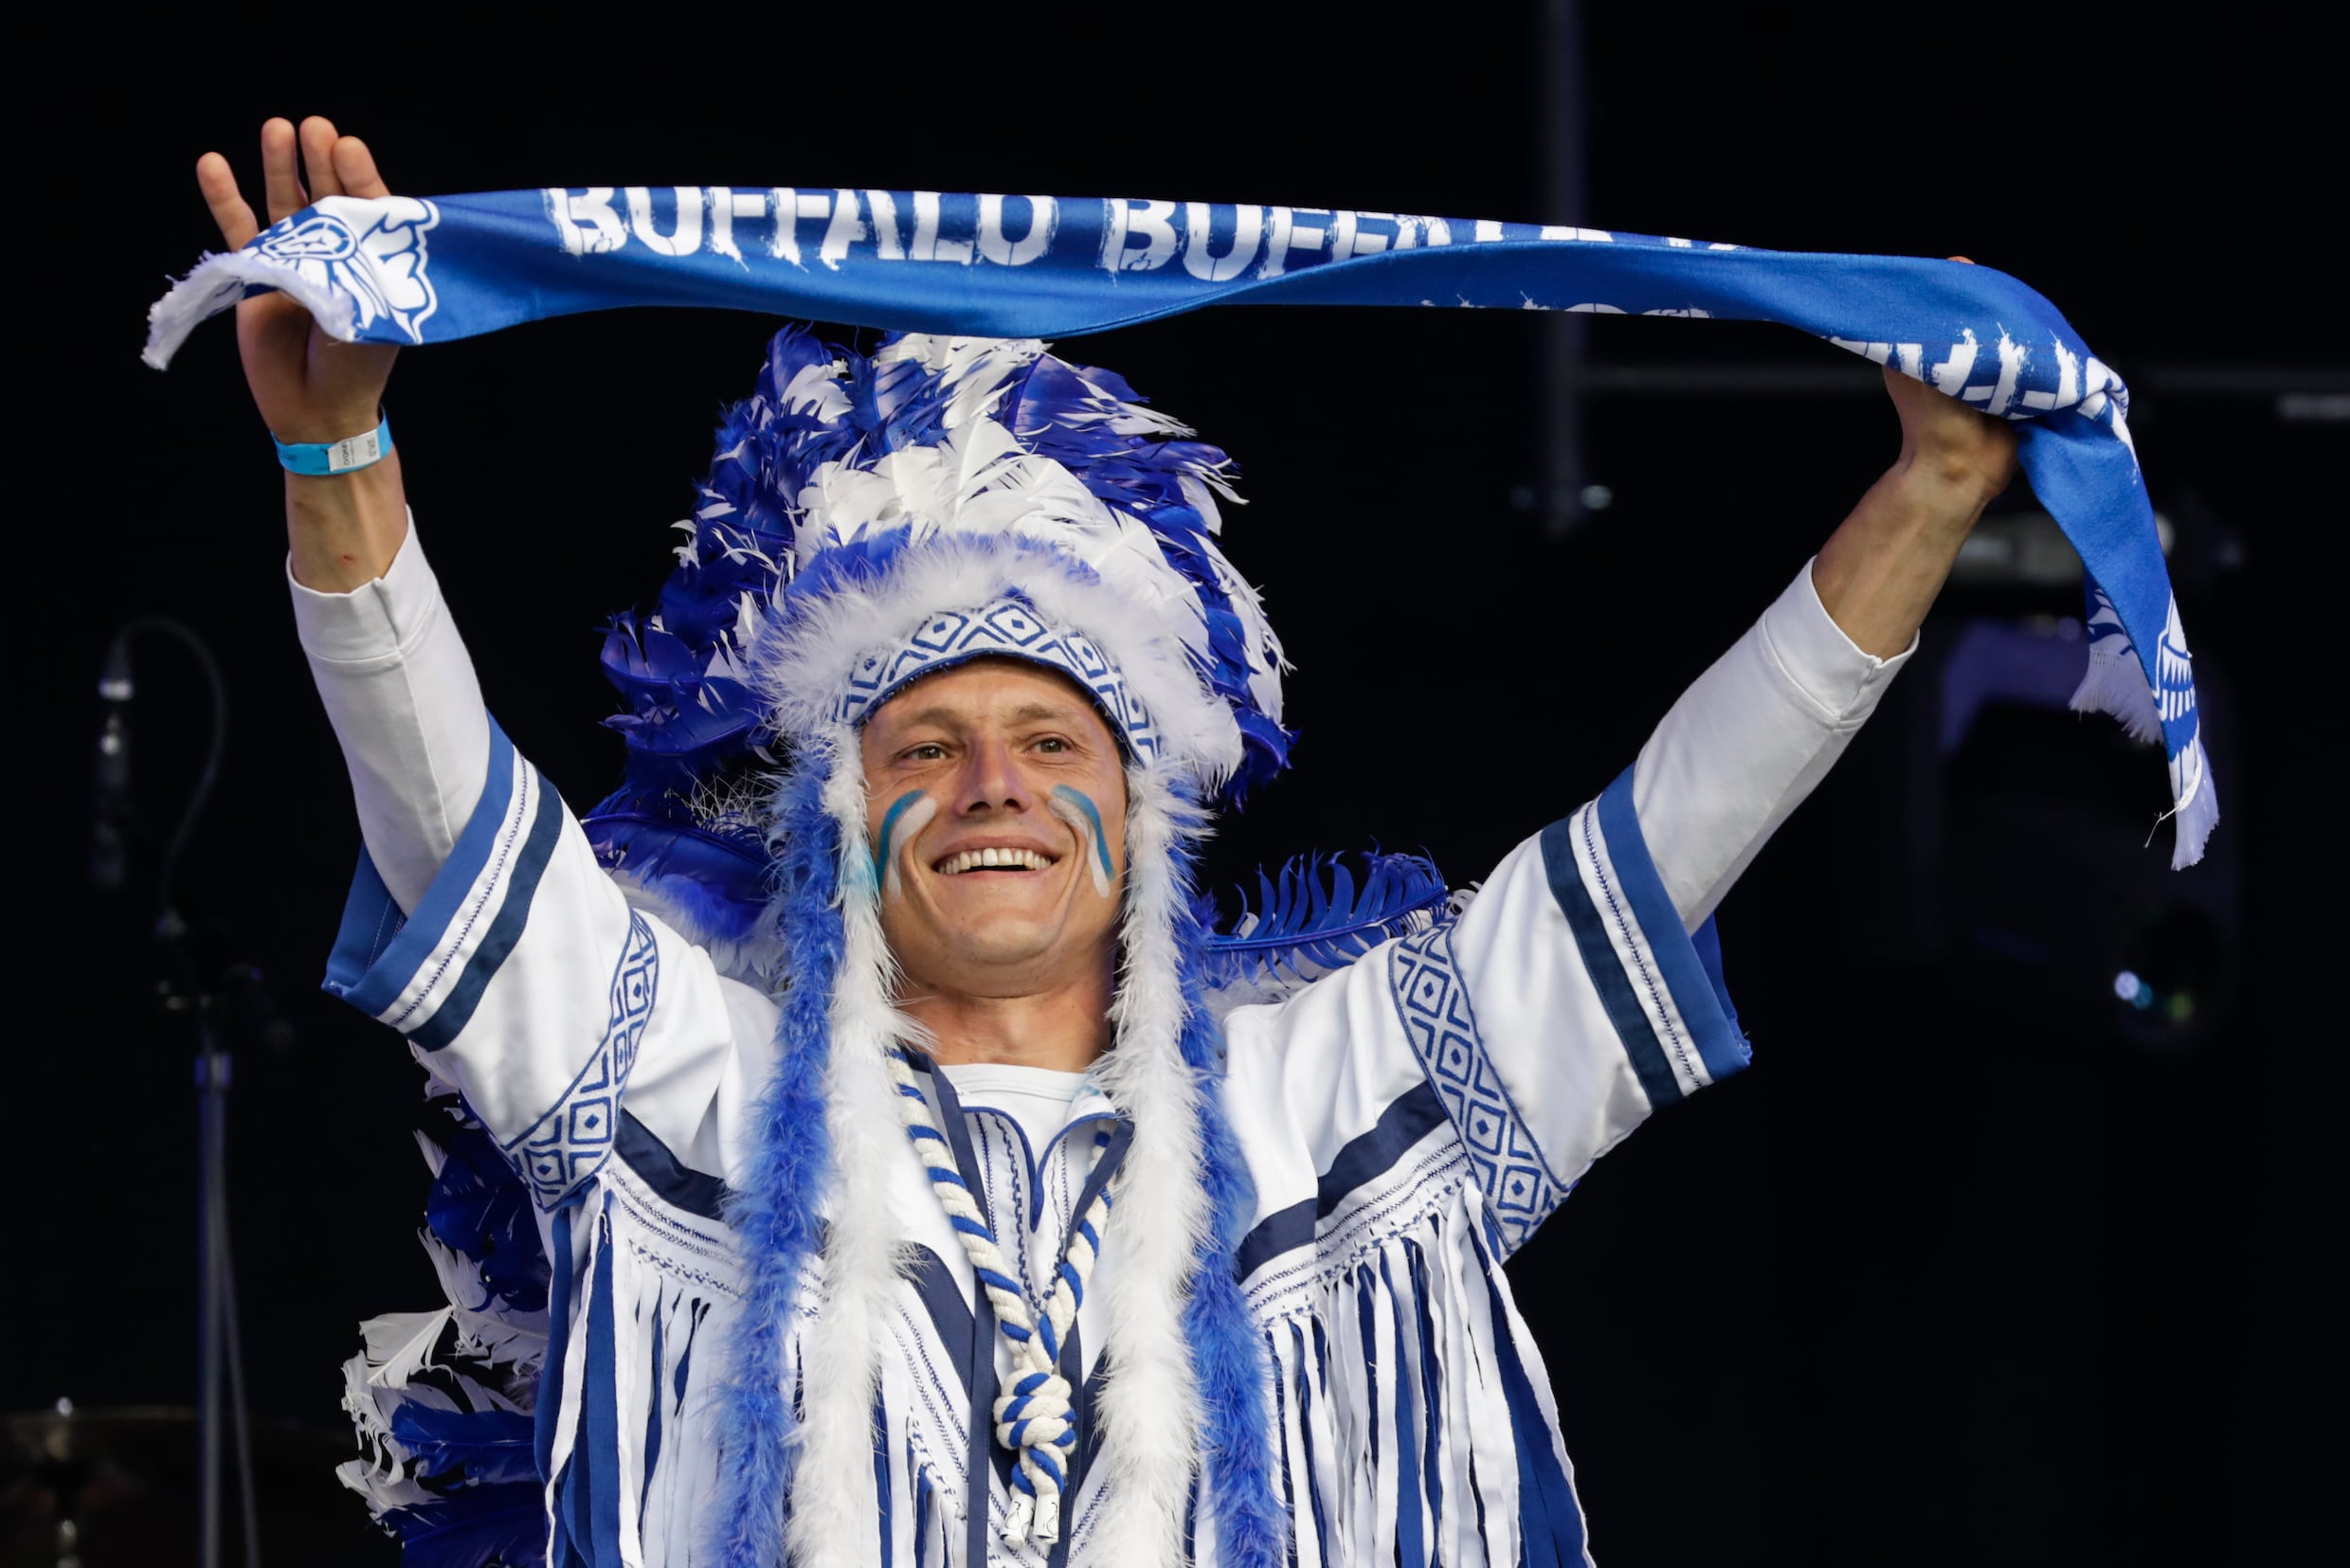 New York Times hekelt Buffalo-mascotte van AA Gent: "Europese ploegen zijn zich niet bewust van stereotypen"